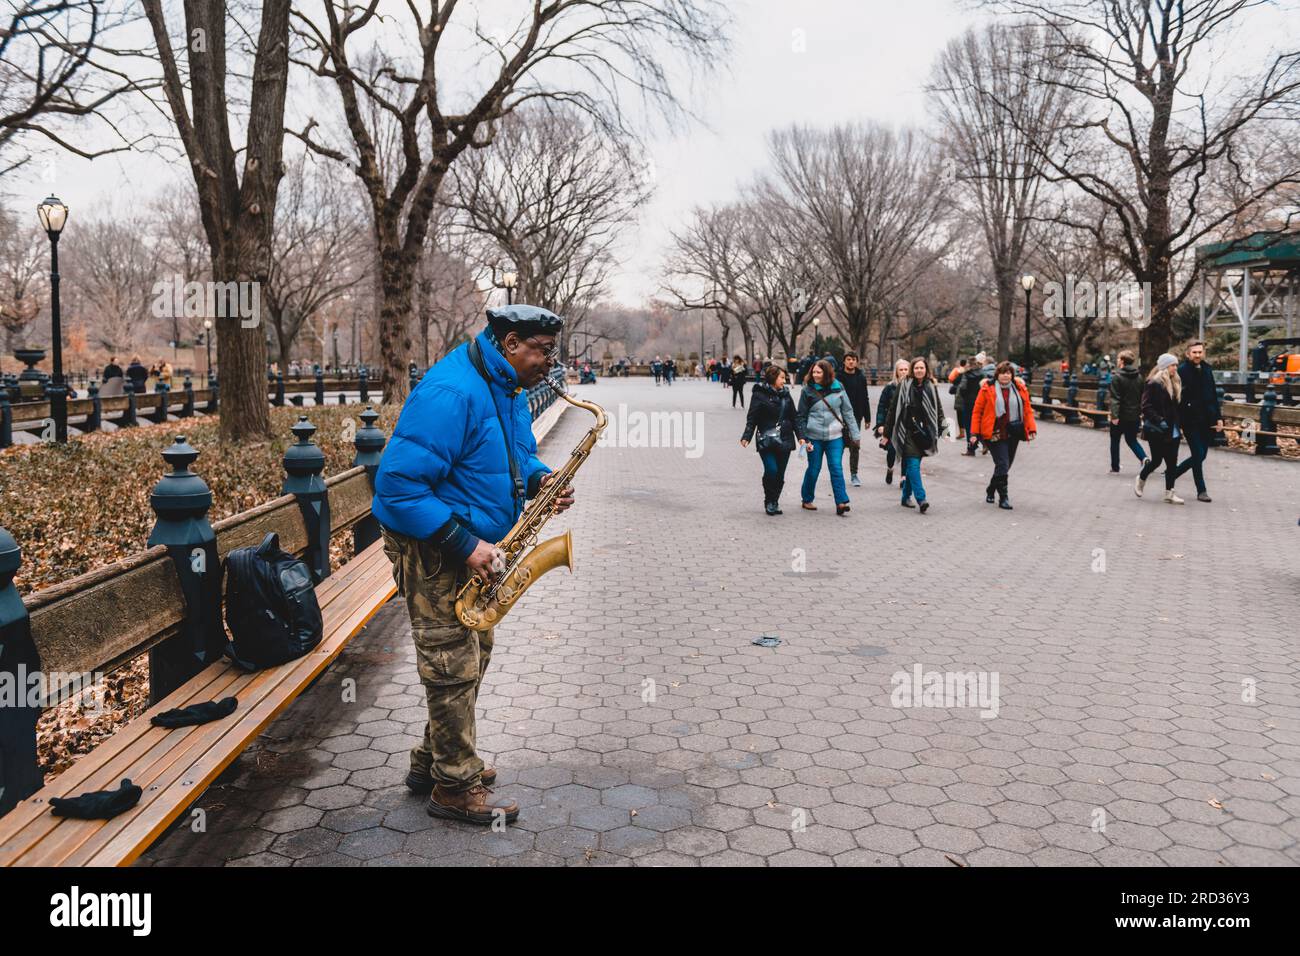 Straßenmusiker spielt Saxophon, während andere Passanten um ihn herumlaufen, Central Park, New York Stockfoto